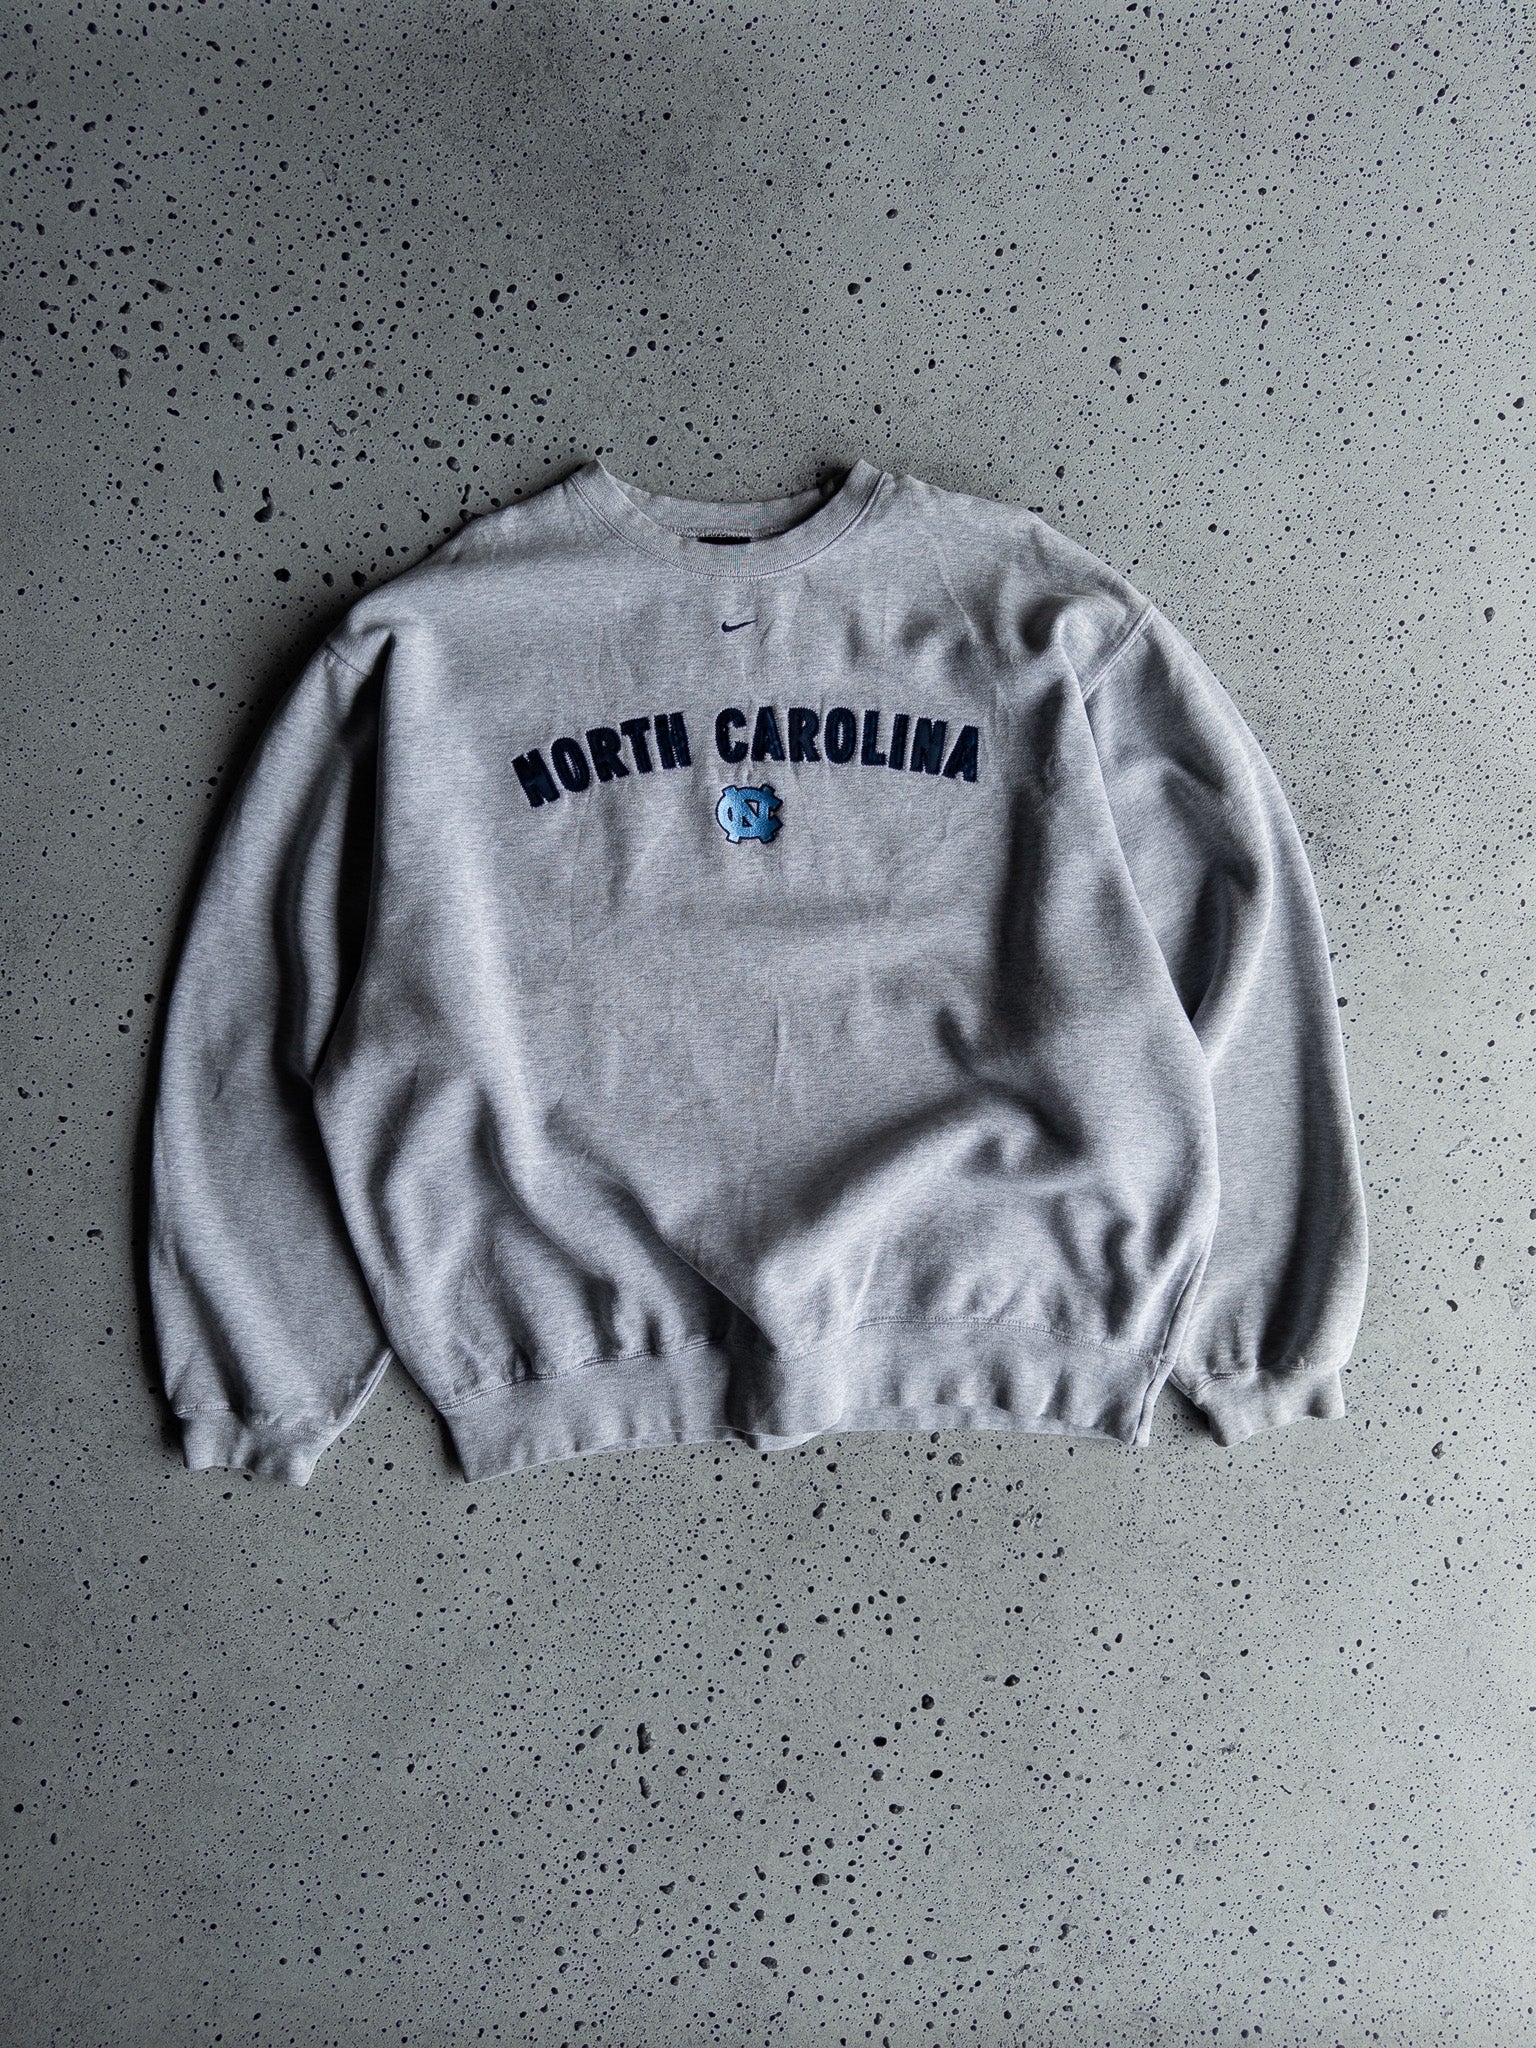 Vintage North Carolina Tar Heels Nike Sweatshirt (XL)